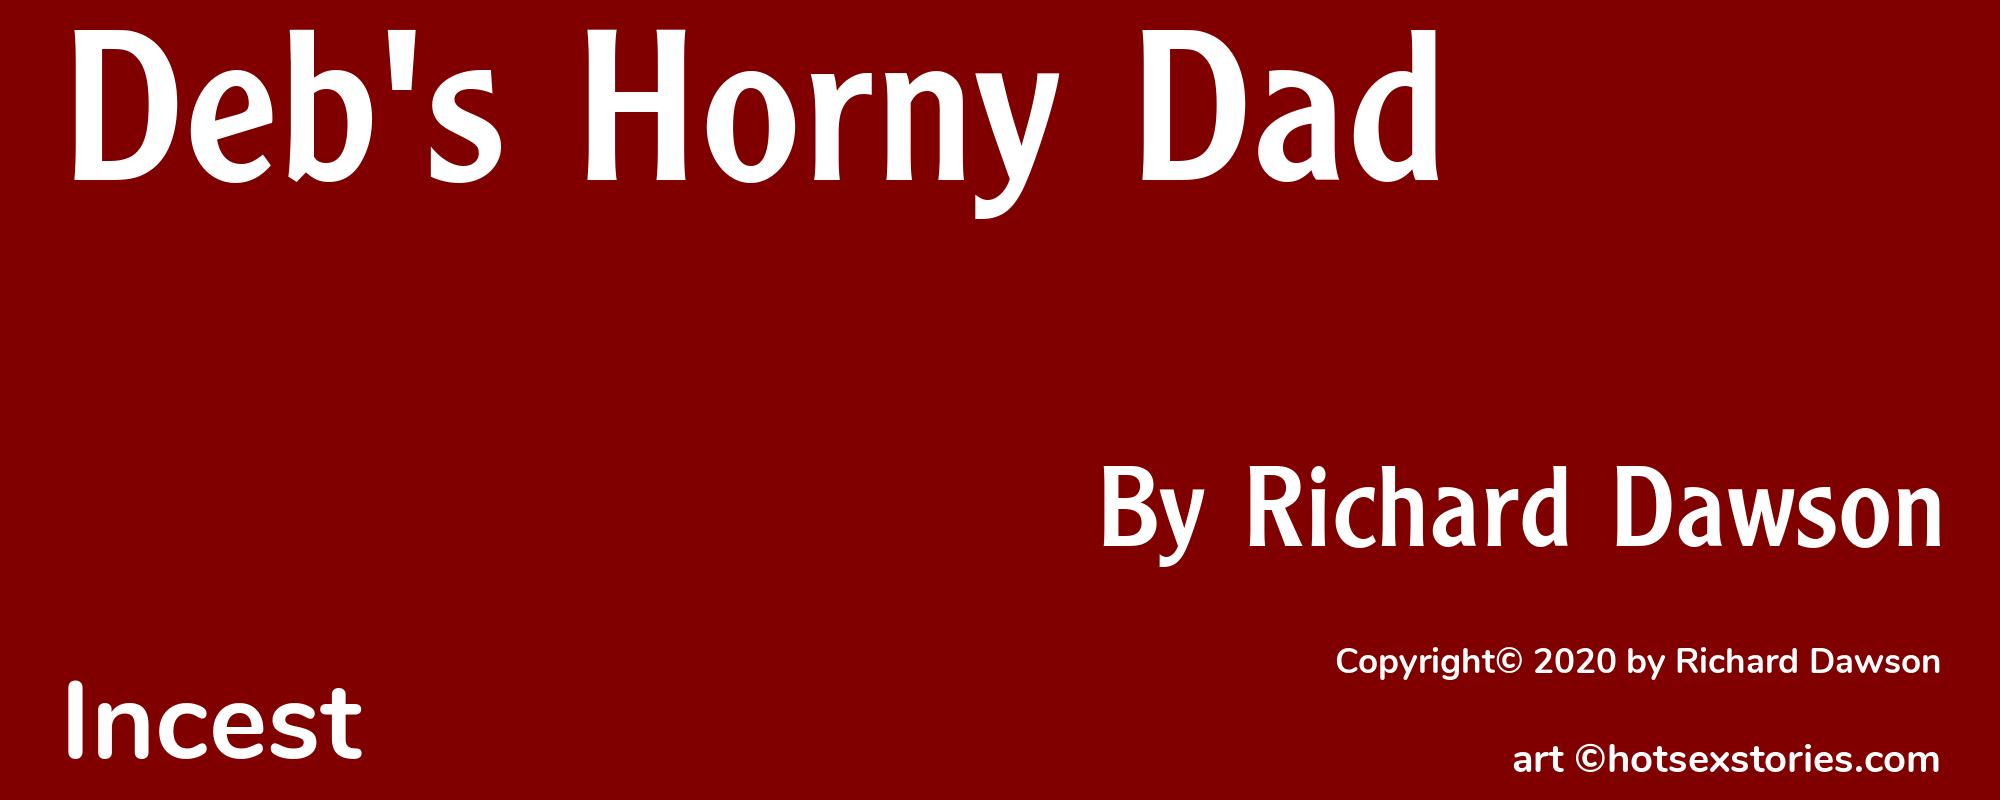 Deb's Horny Dad - Cover